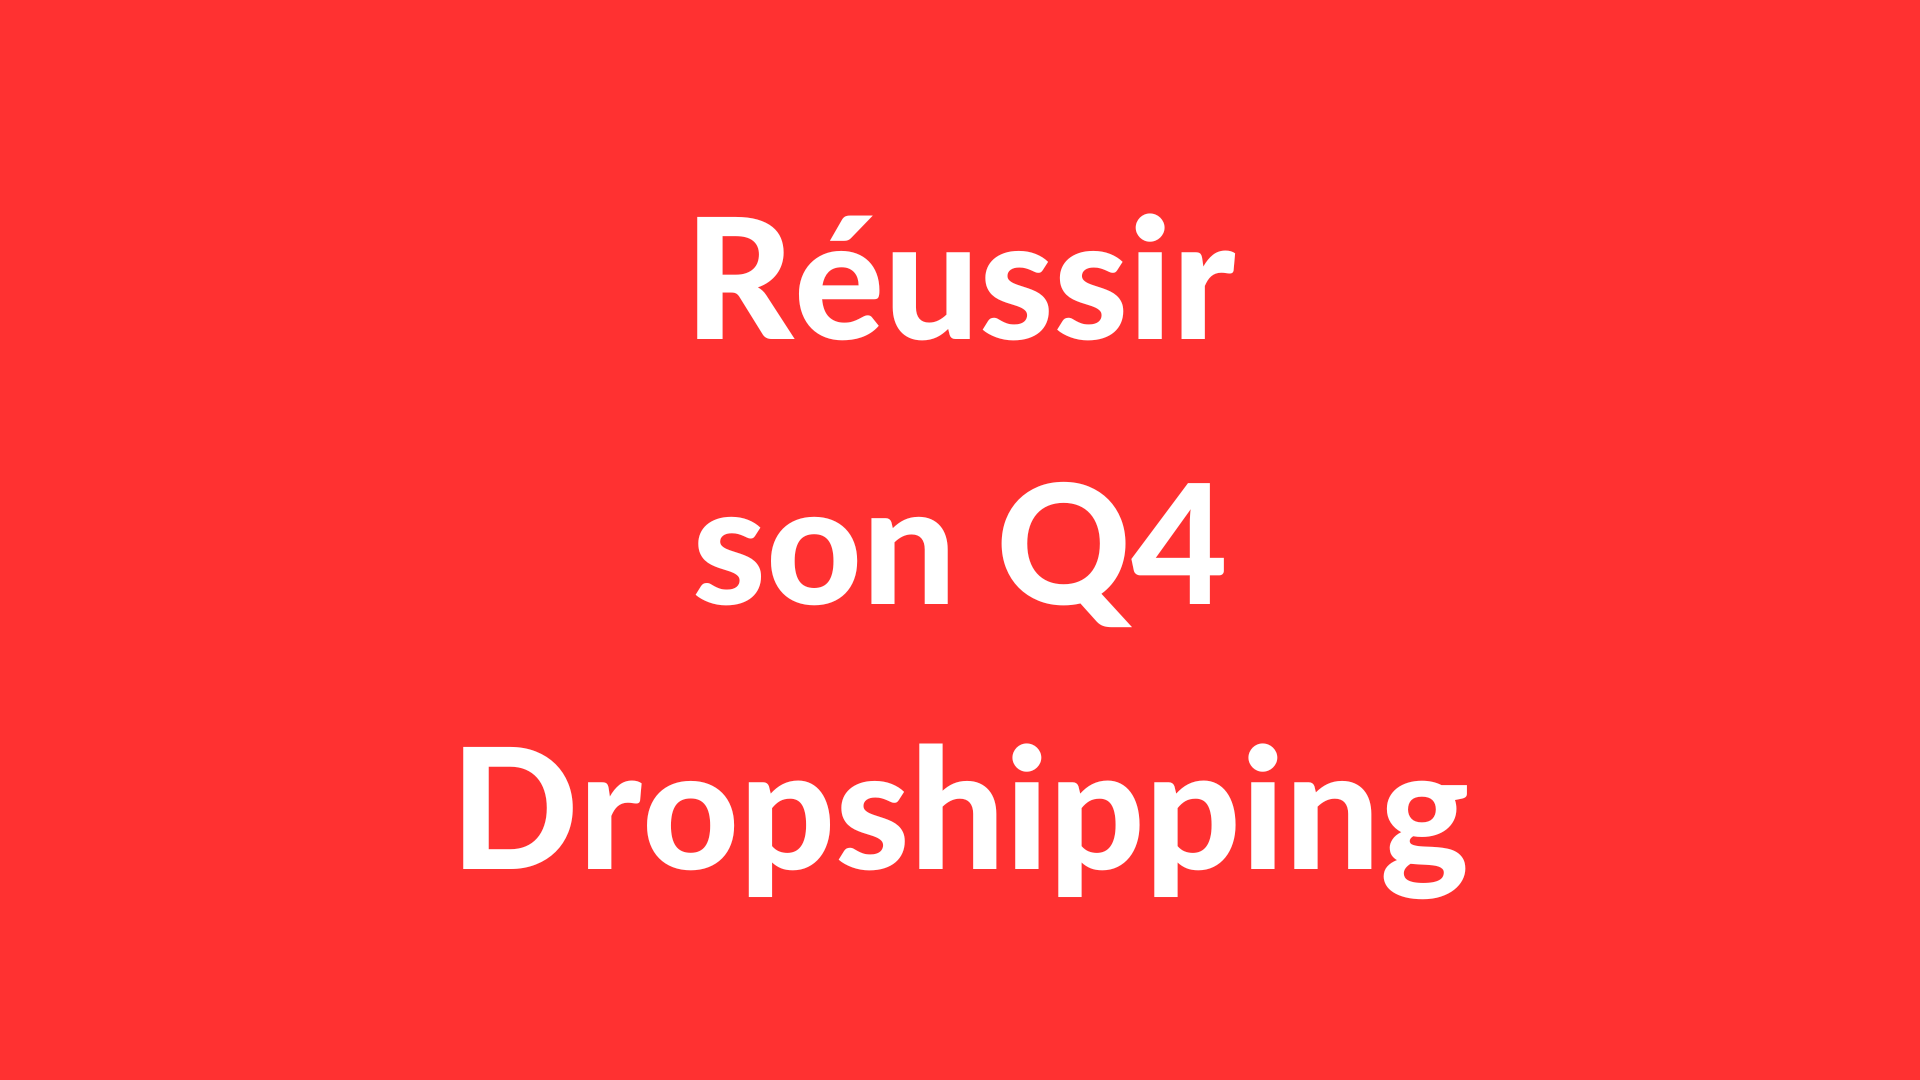 Comment Gagner de l’Argent pendant le Q4 en Dropshipping (E-Commerce) ?